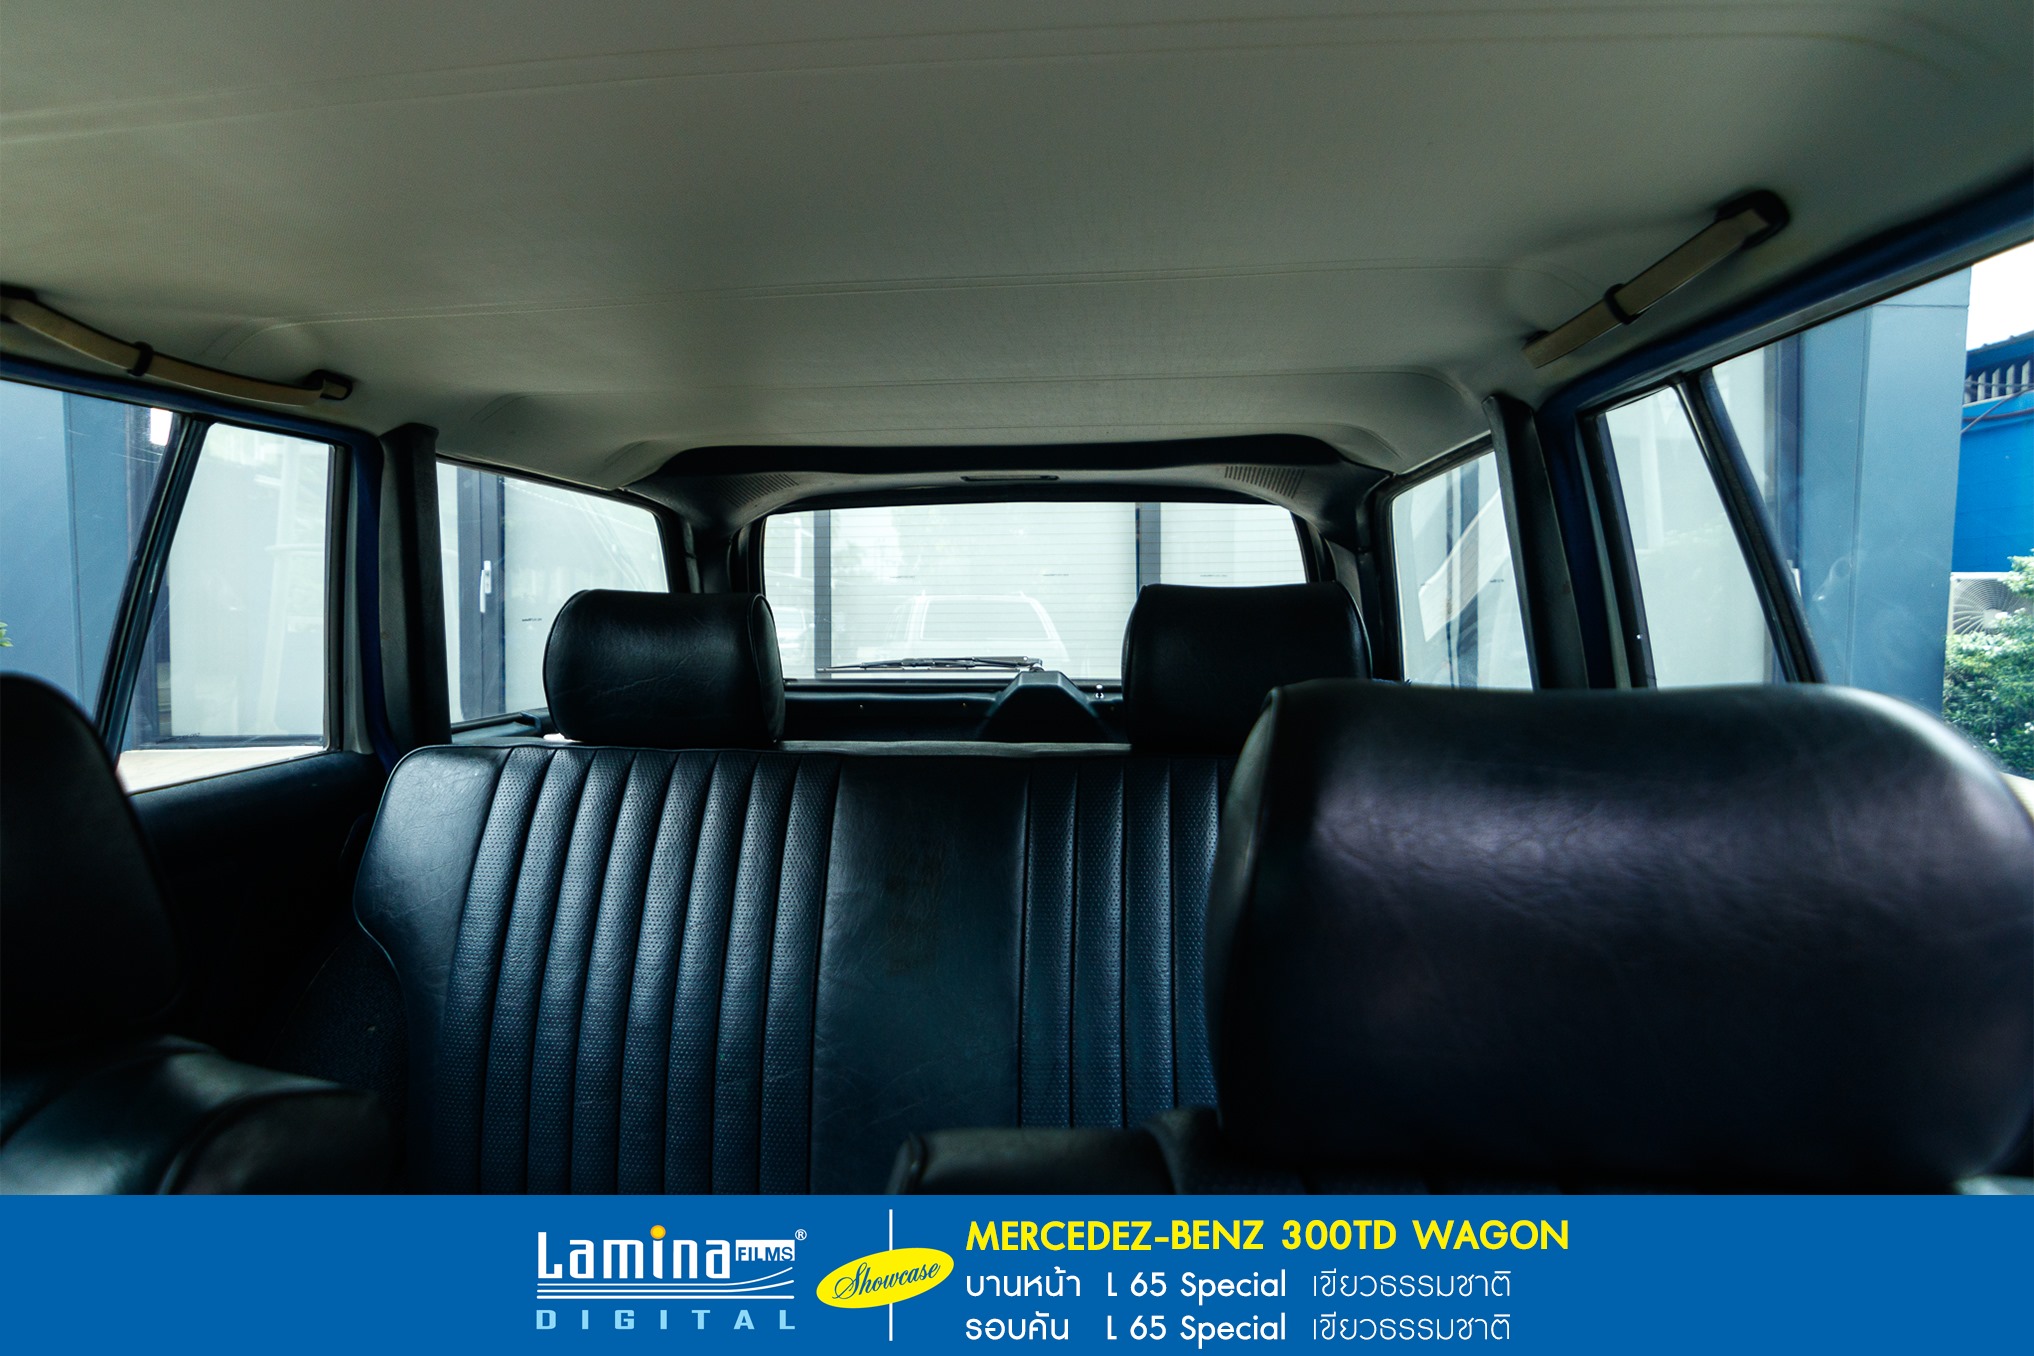 ฟิล์มใสกันร้อน  lamina special series MERCEDEZ BENZ 300TD WAGON  7